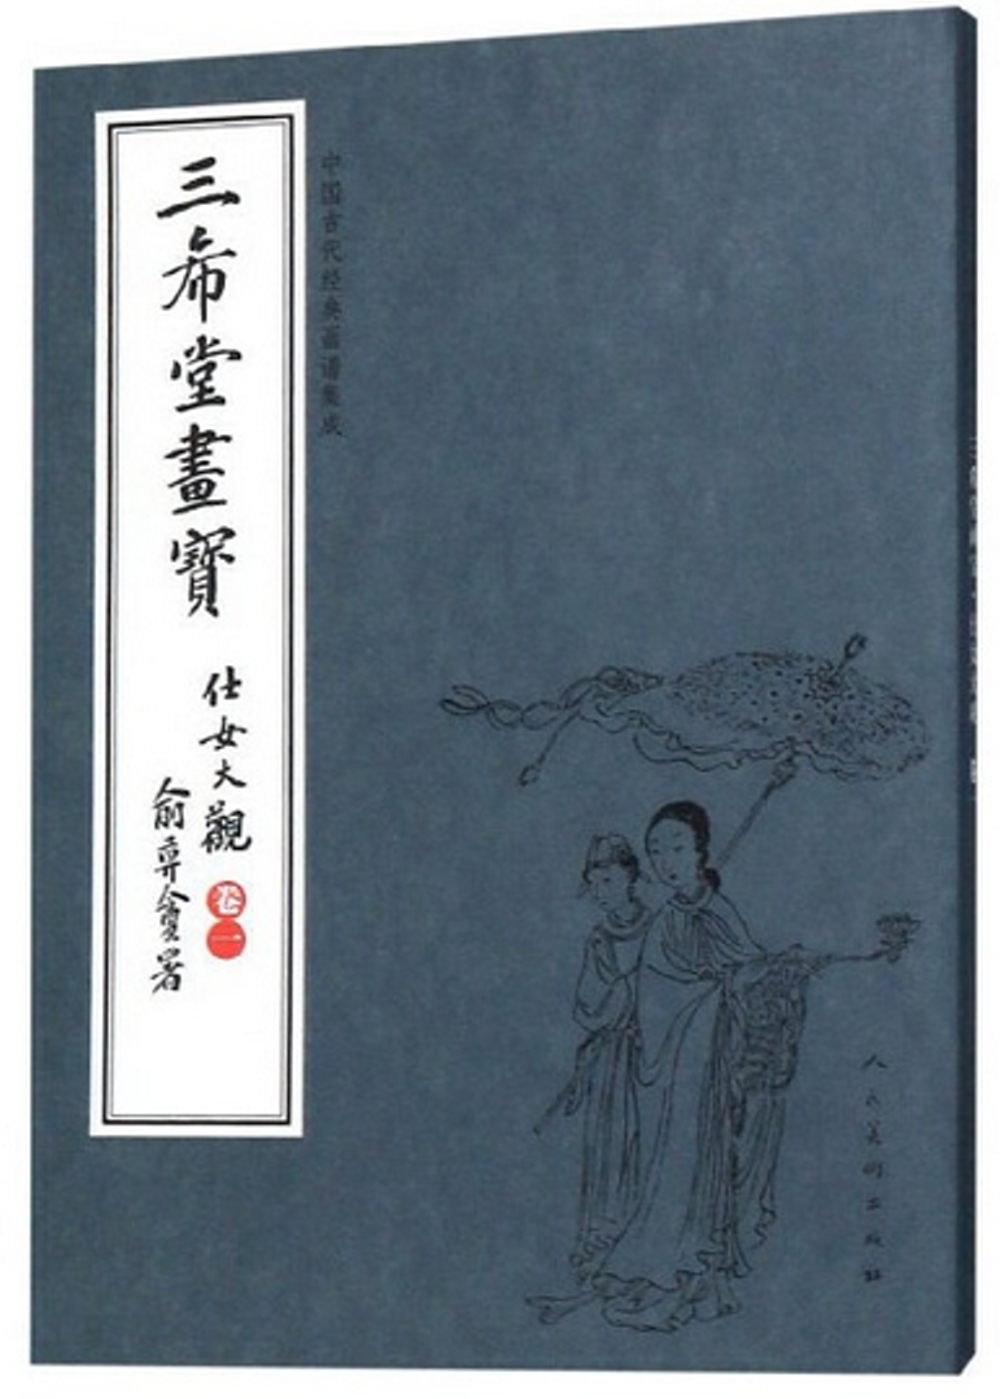 中國古代經典畫譜集成 三希堂畫寶 仕女大觀·卷一